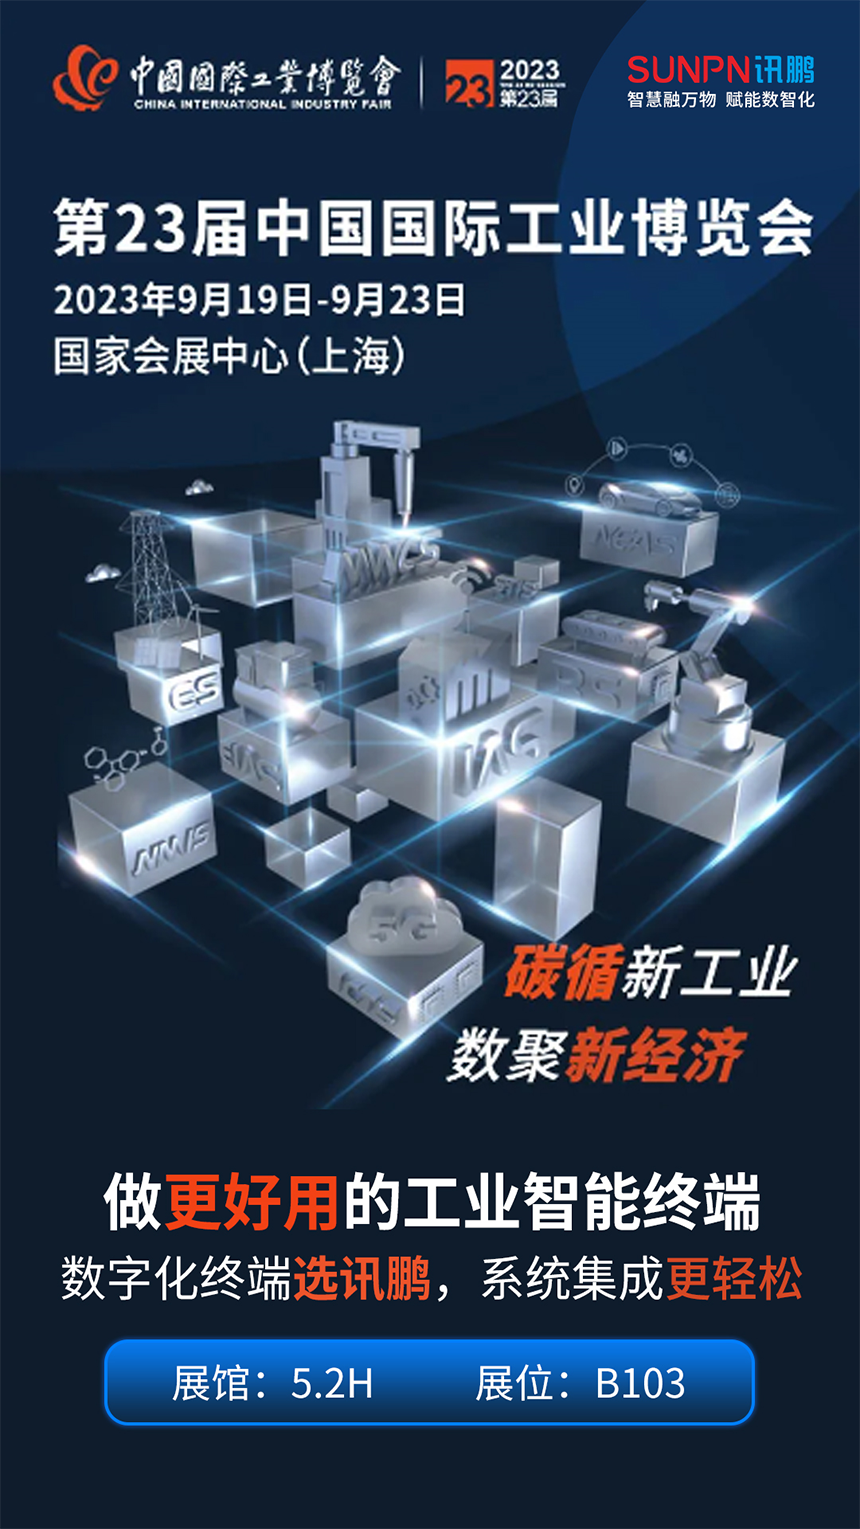 讯鹏科技亮相第23届中国国际工业博览会！